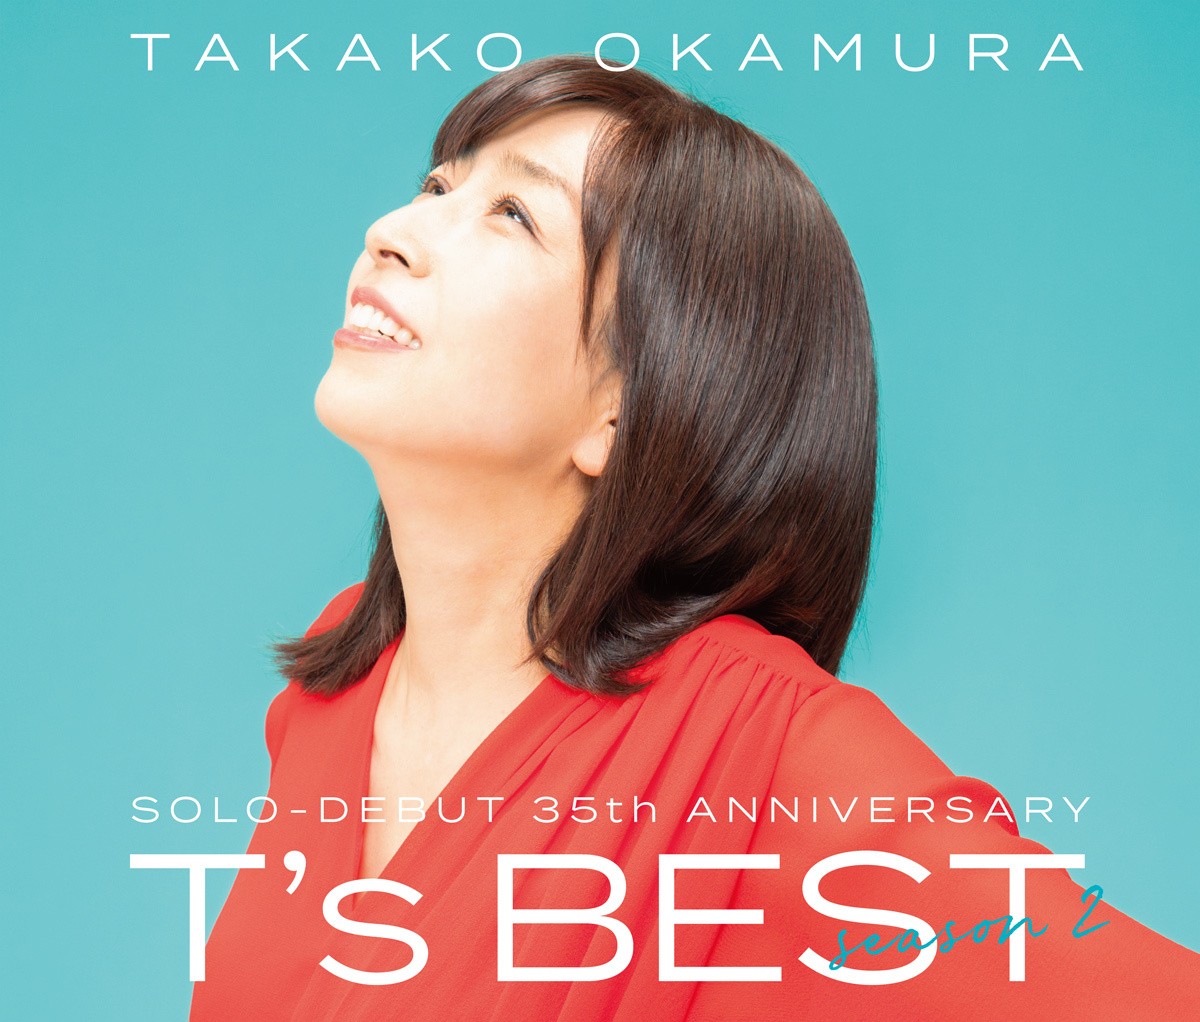 岡村孝子 (Takako Okamura) – Solo-debut 35th Anniversary『T’s BEST season 2 [FLAC / CD] [2021.09.08]